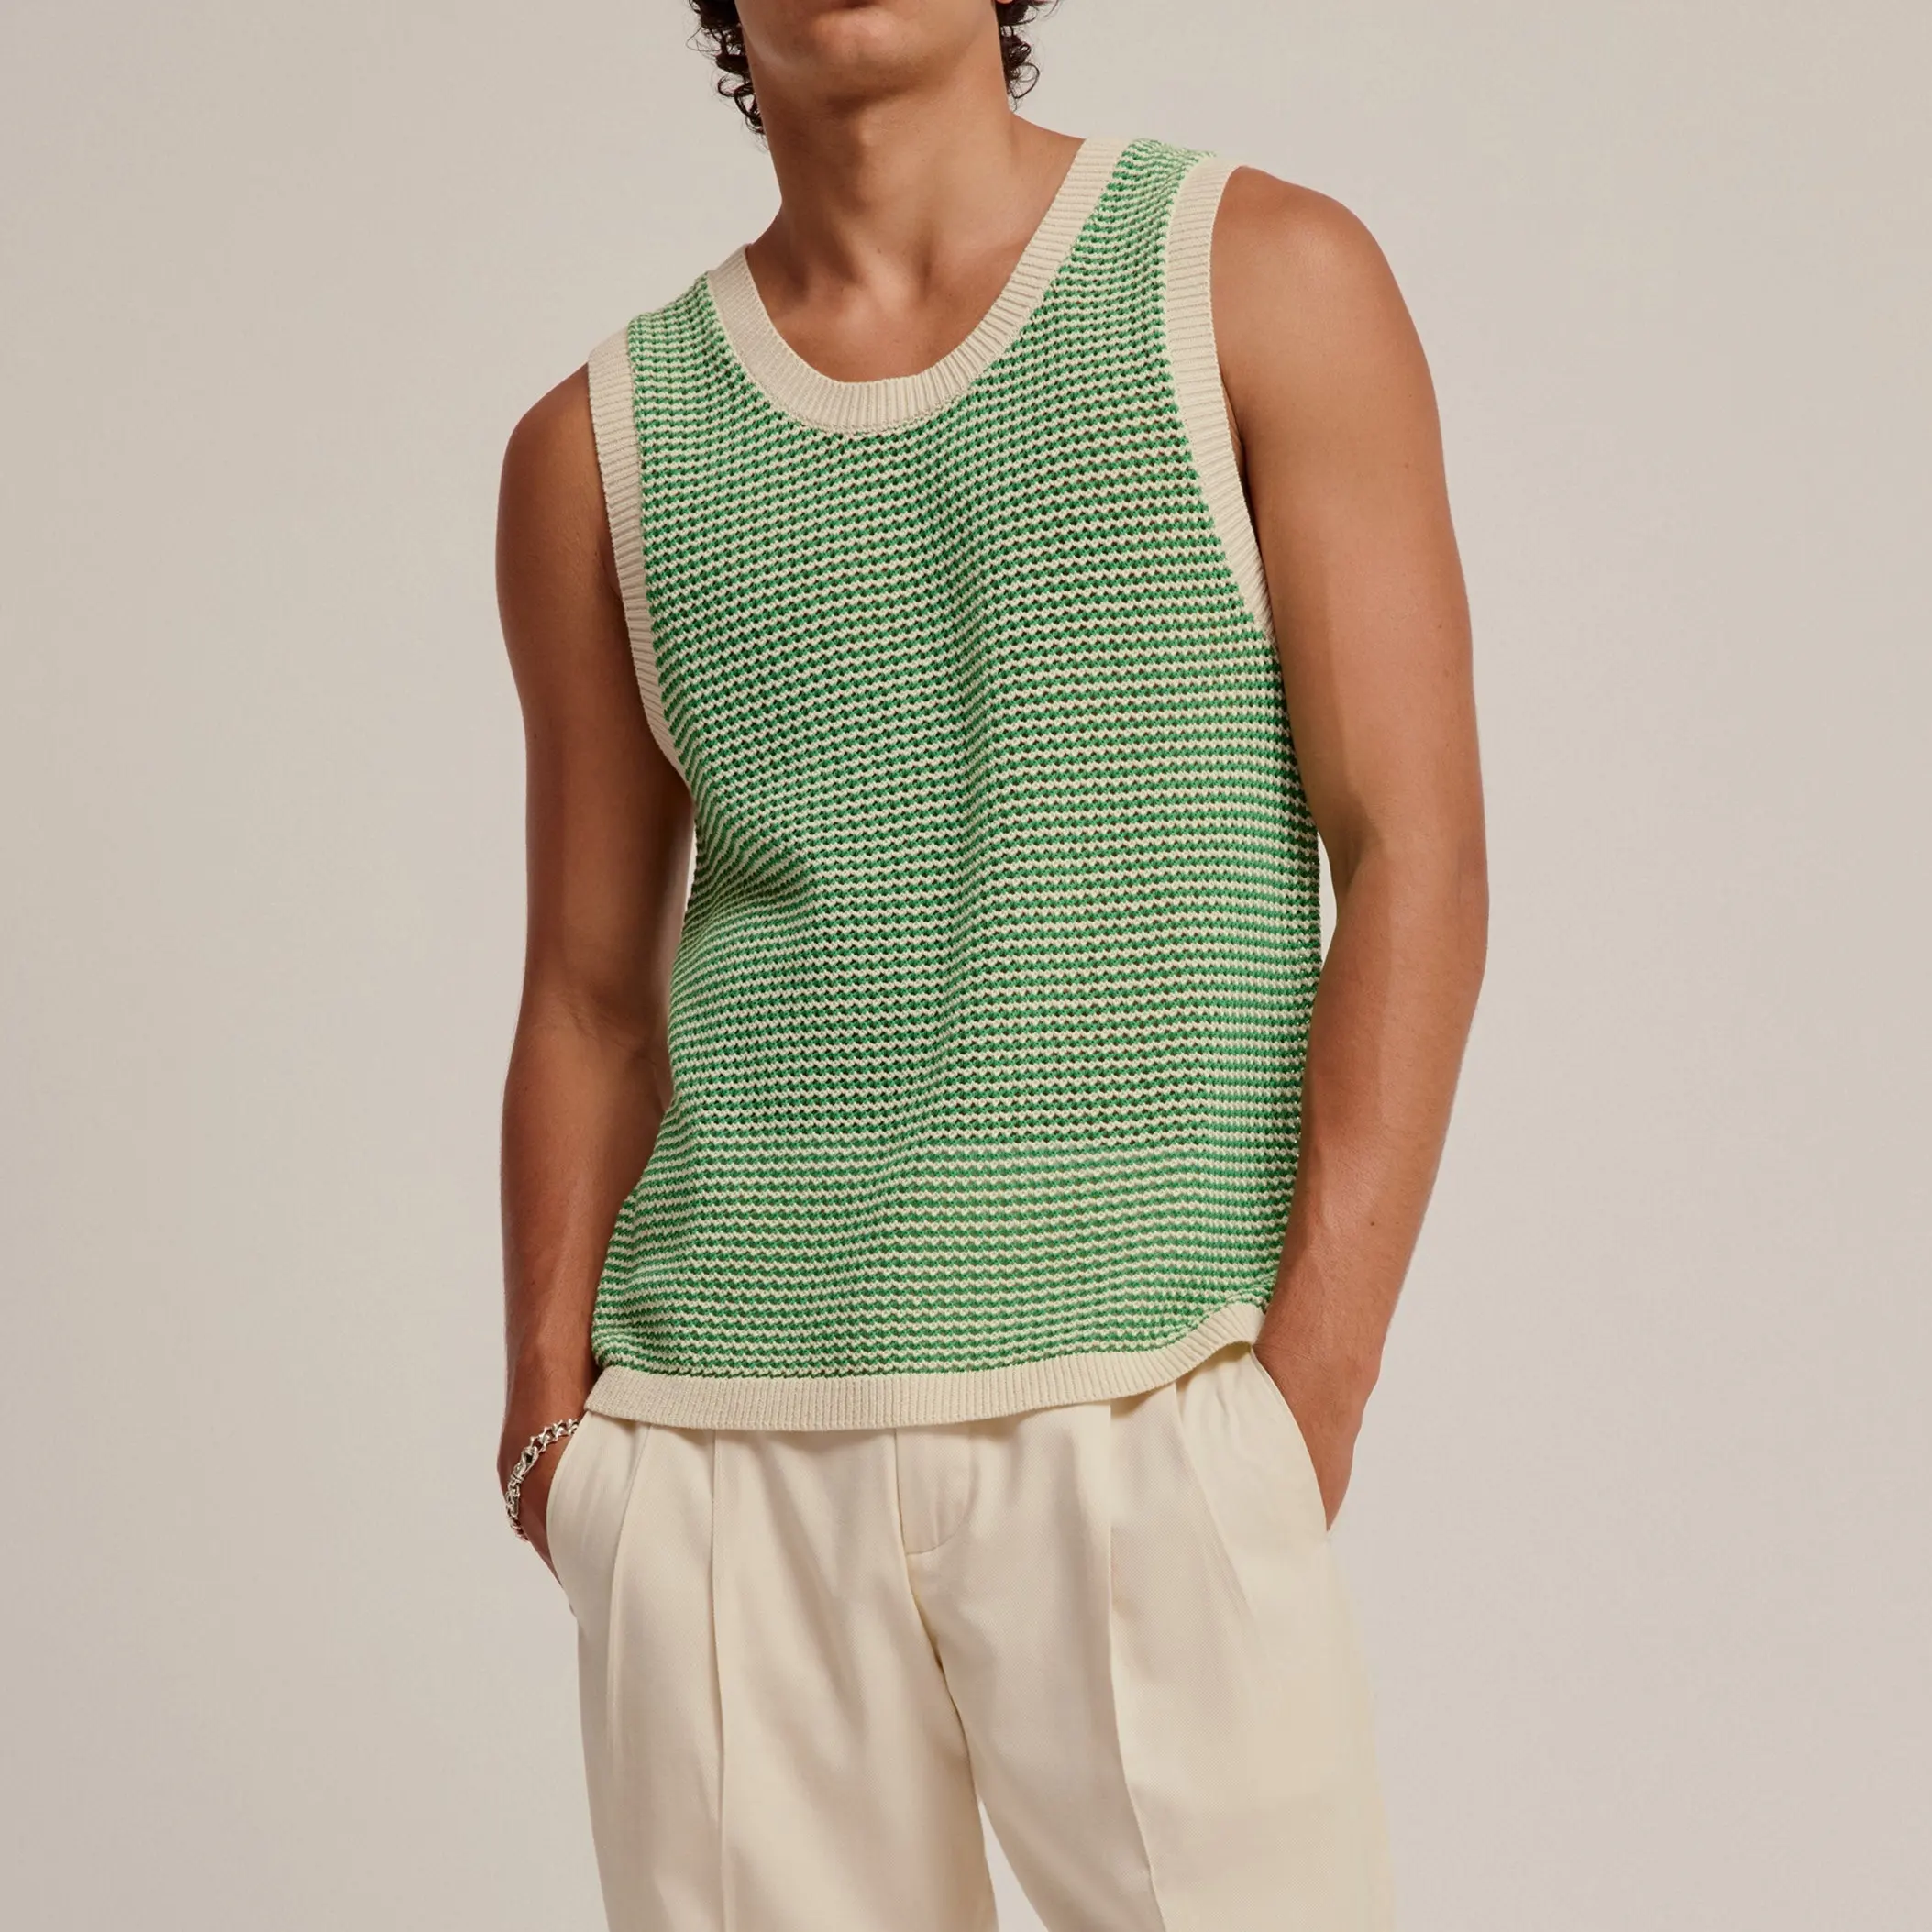 Camiseta sin mangas de punto informal personalizada para hombre, camiseta sin mangas de punto de verano de algodón transpirable suave